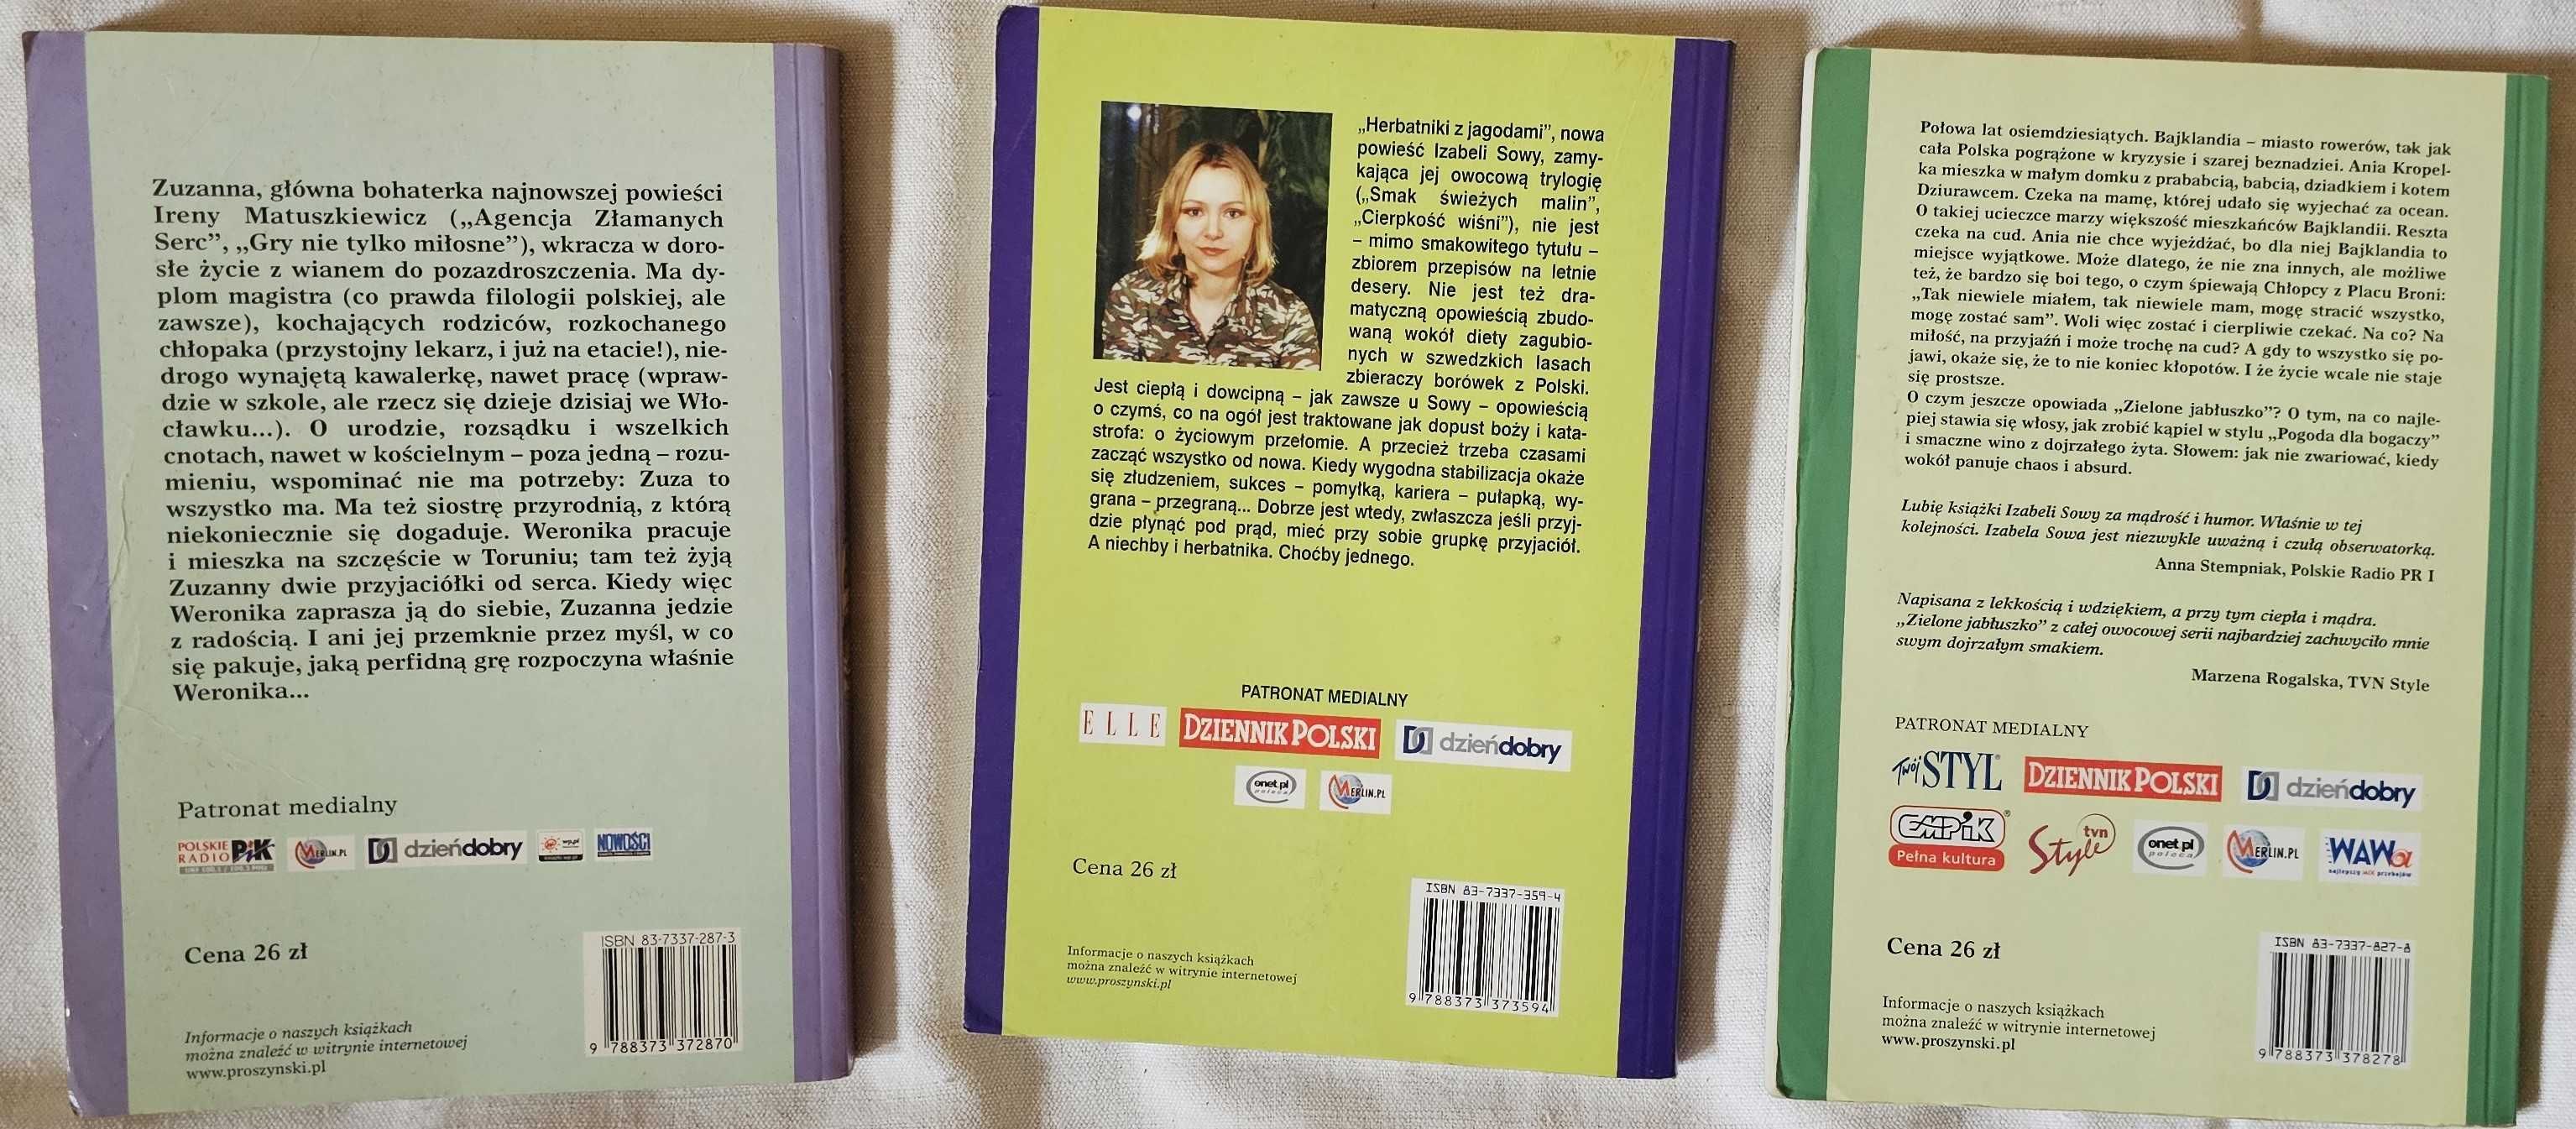 3 książki autorzy. Irena Matuszkiewicz i Izabela Sowa